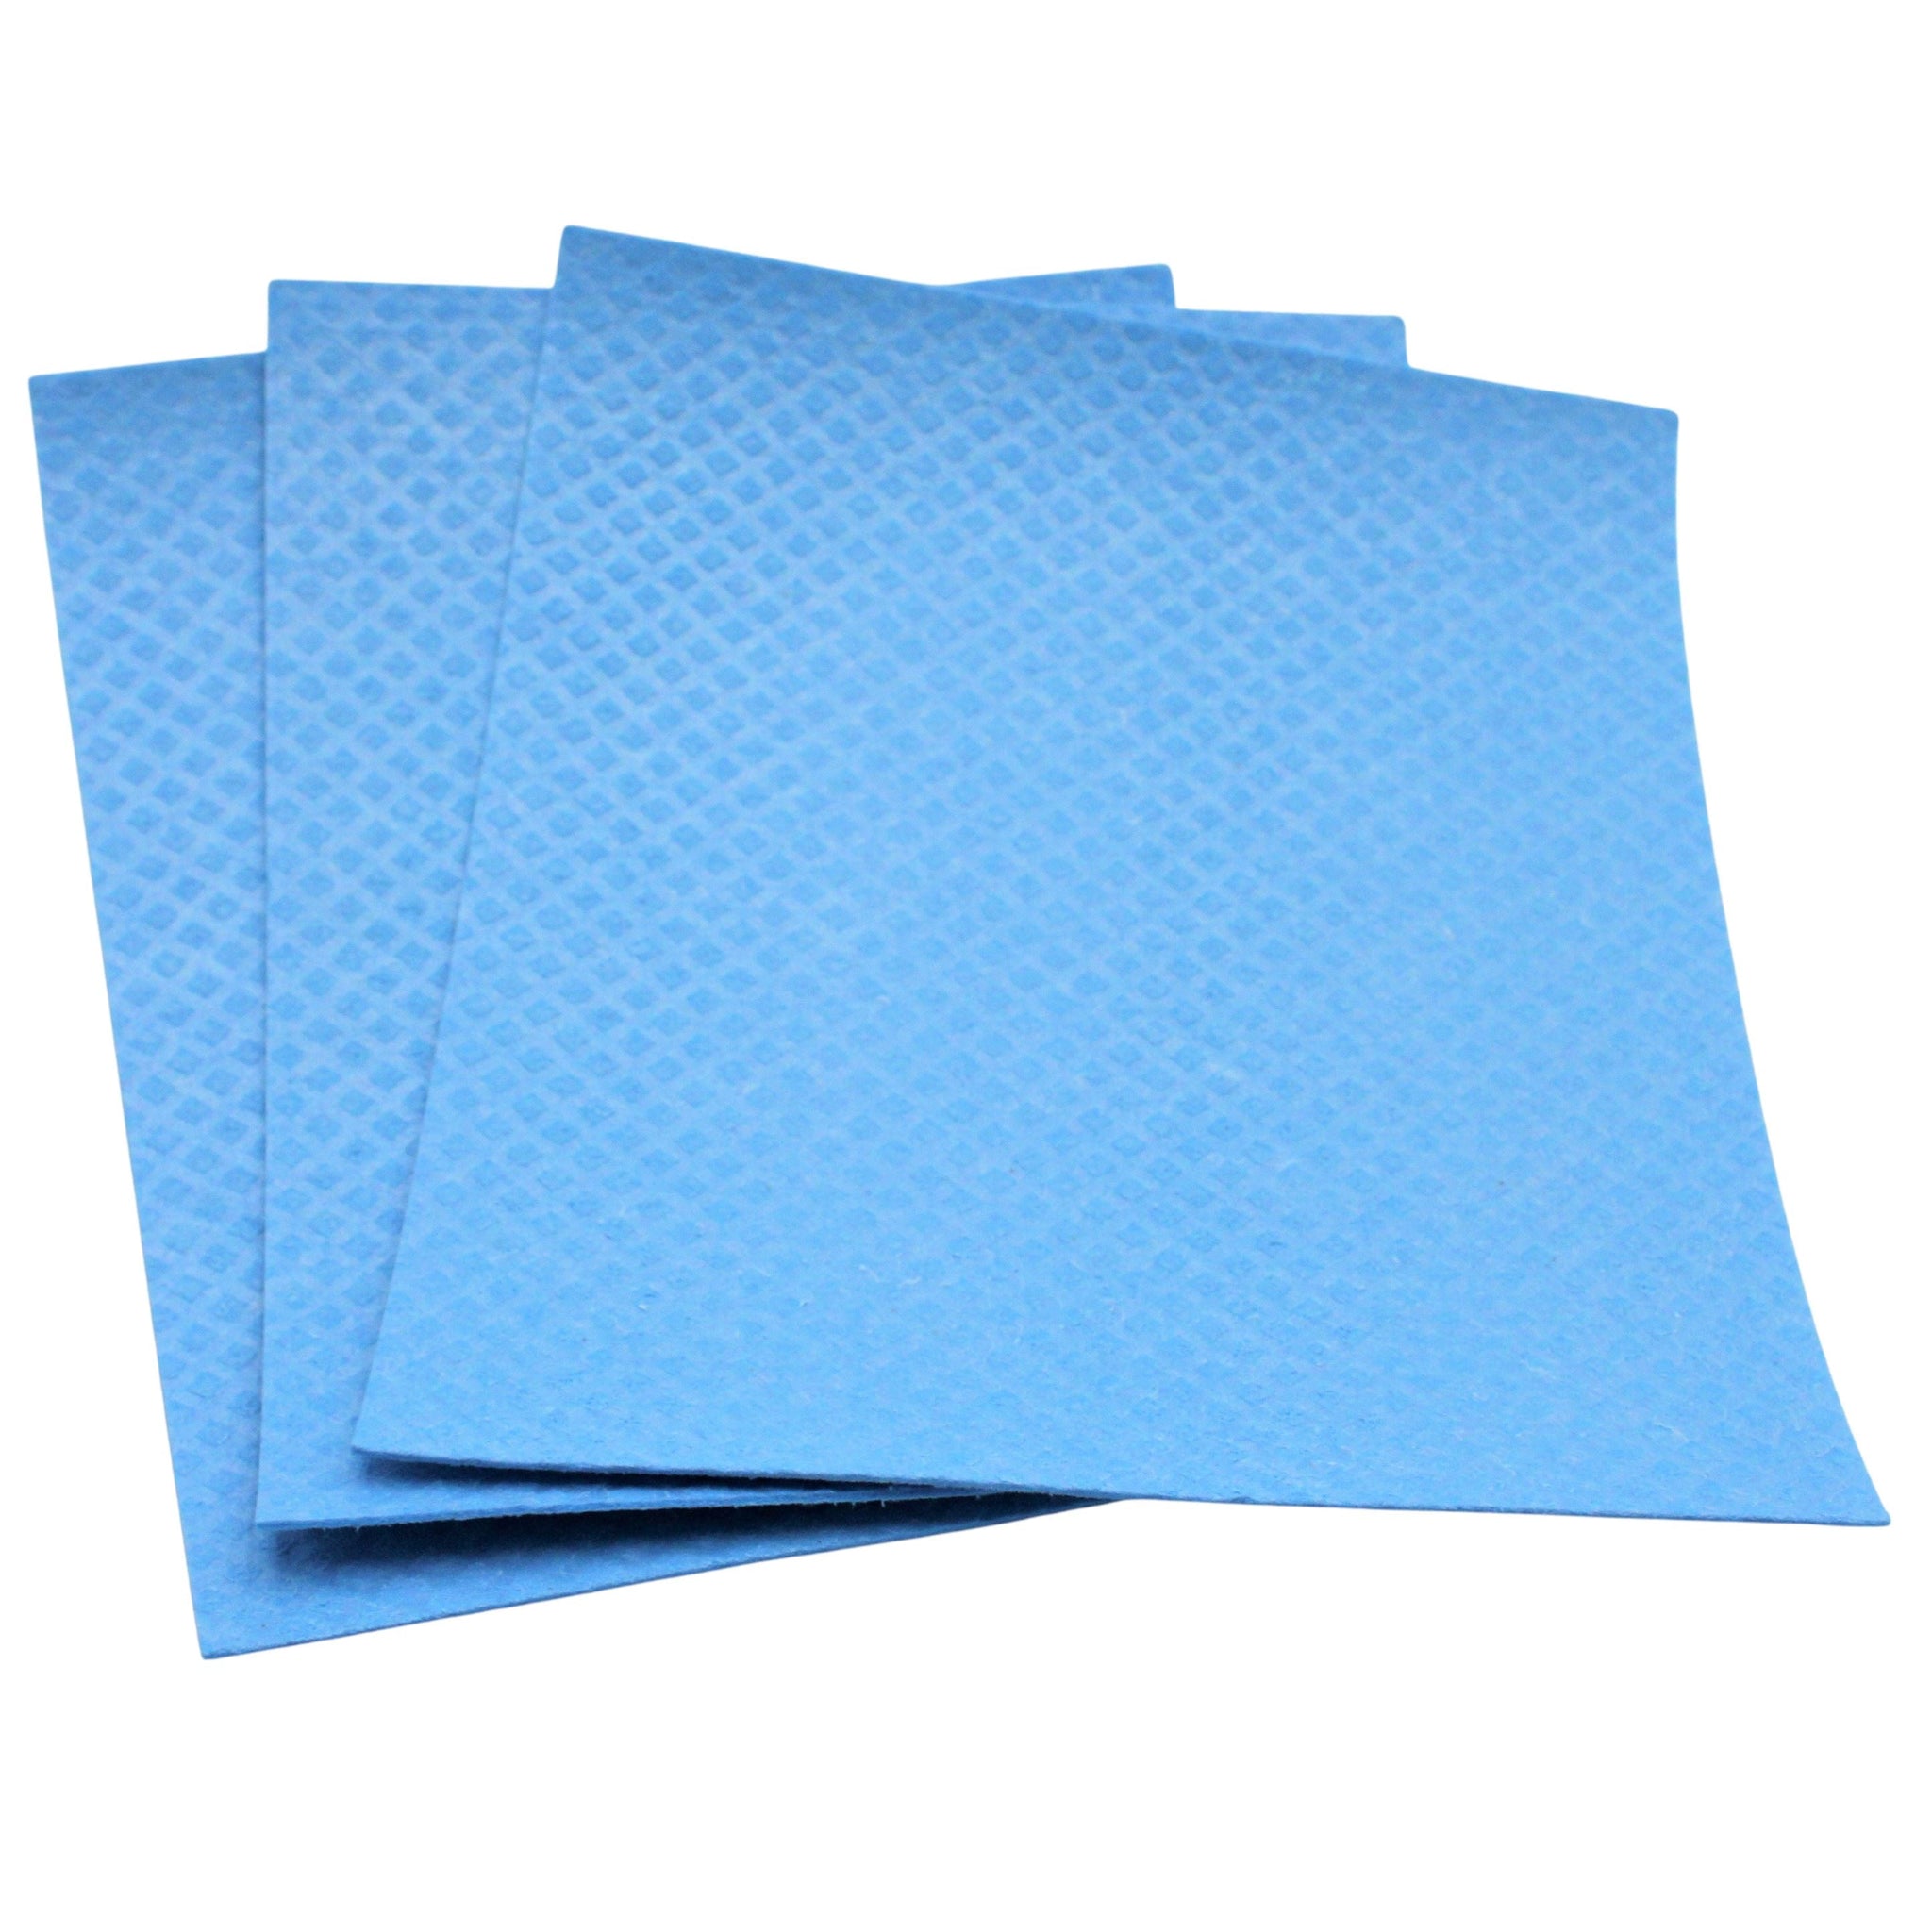 Suztain - Disktrasa utan Mikroplast - XL - 3 st. - blå Suztain 